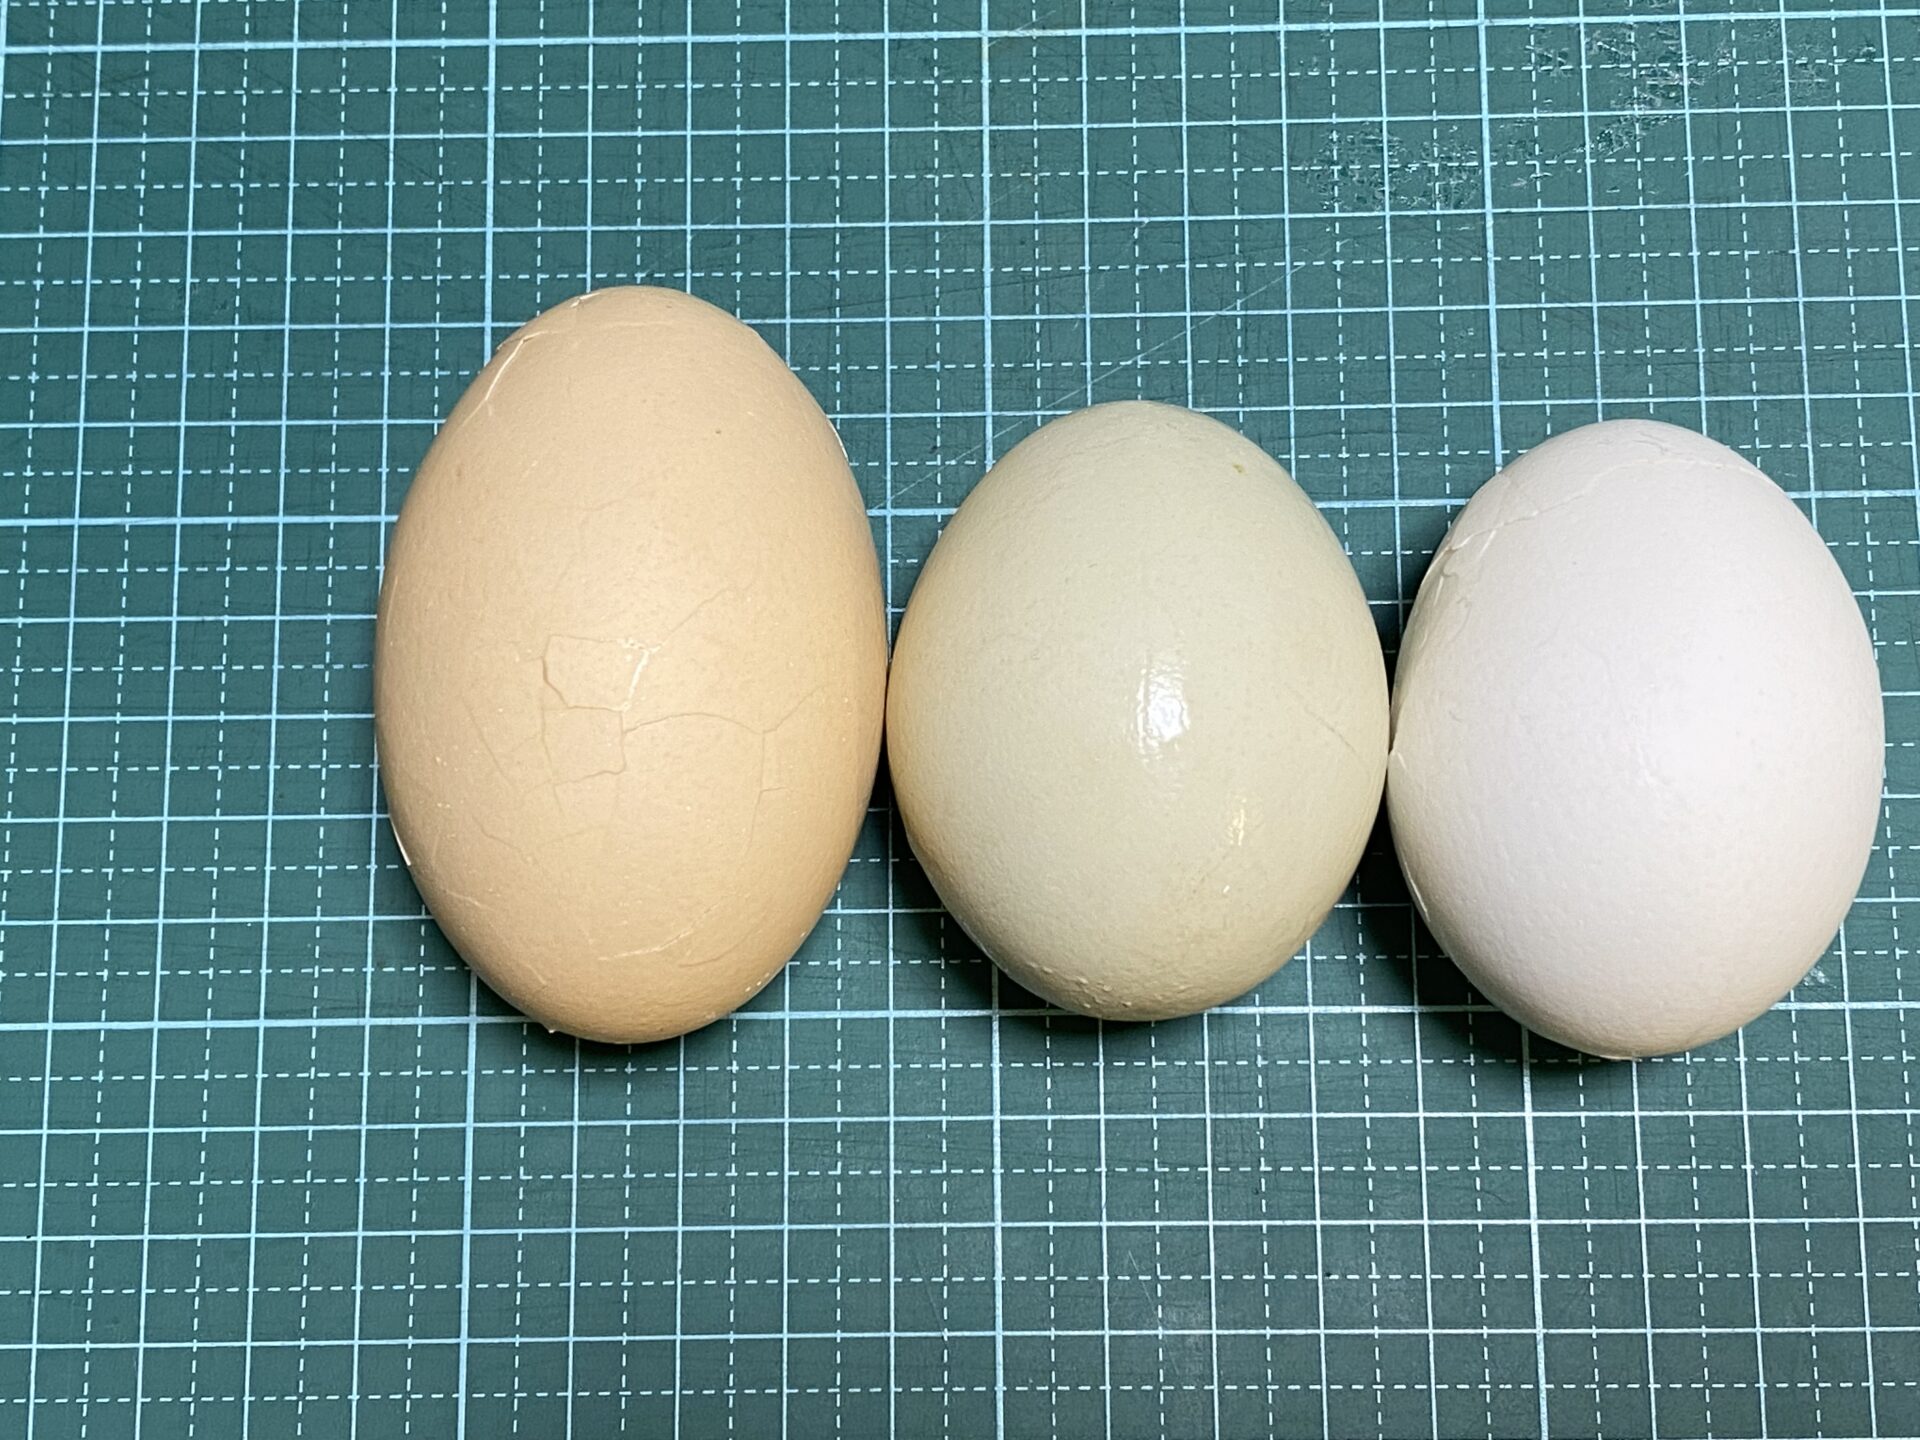 我が家のニワトリ 411 久しぶりに大きな卵 今年2月以来の双子卵 二黄卵 でした 前編 雨がやんだら裏庭に